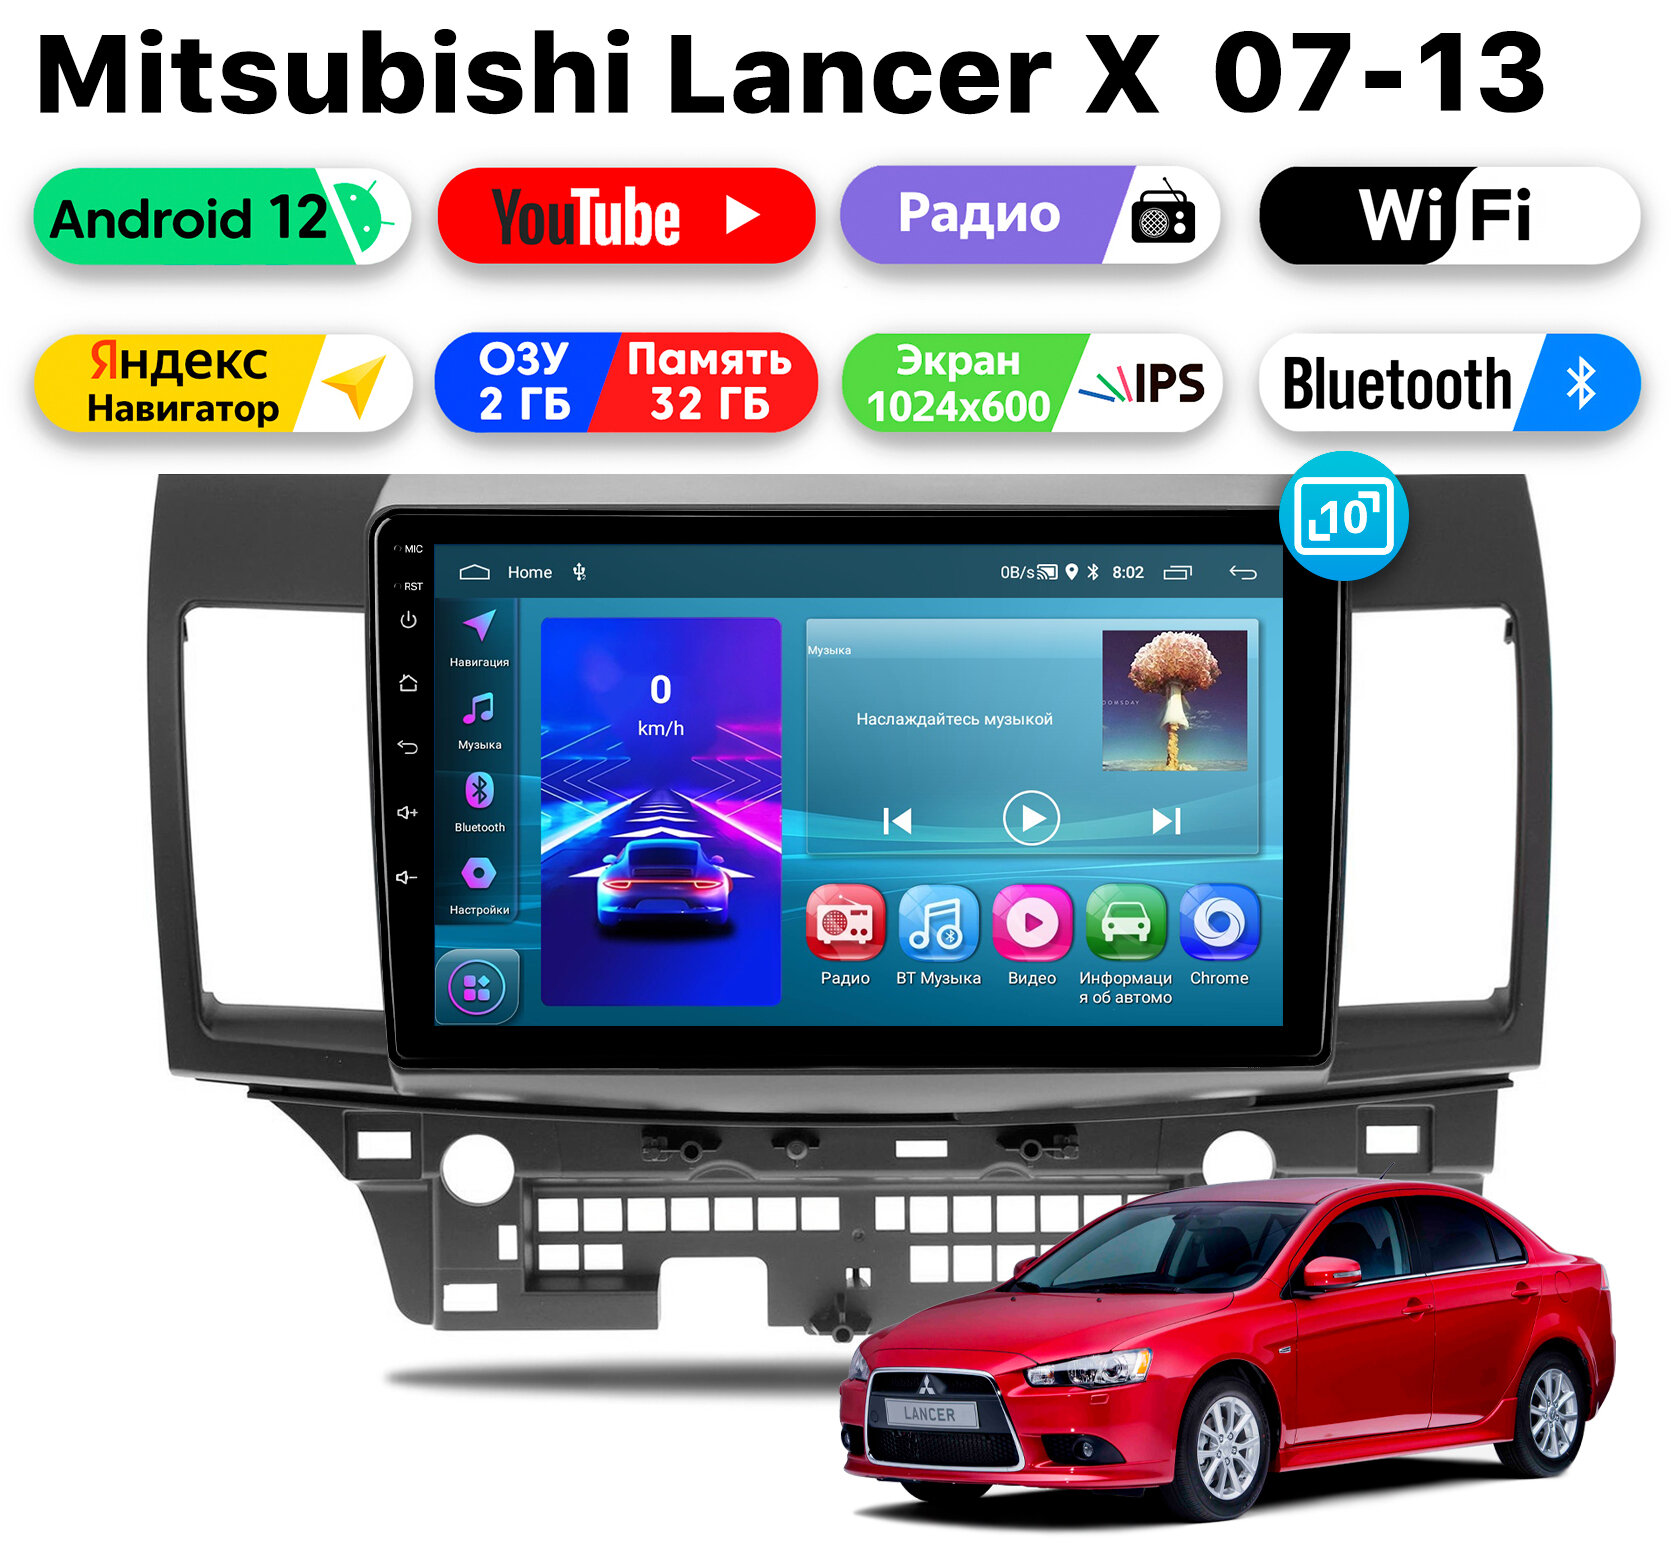 Автомагнитола для Mitsubishi Lancer X (2007-2013), Android 12, 2/32 Gb, Wi-Fi, Bluetooth, Hands Free, разделение экрана, поддержка кнопок на руле